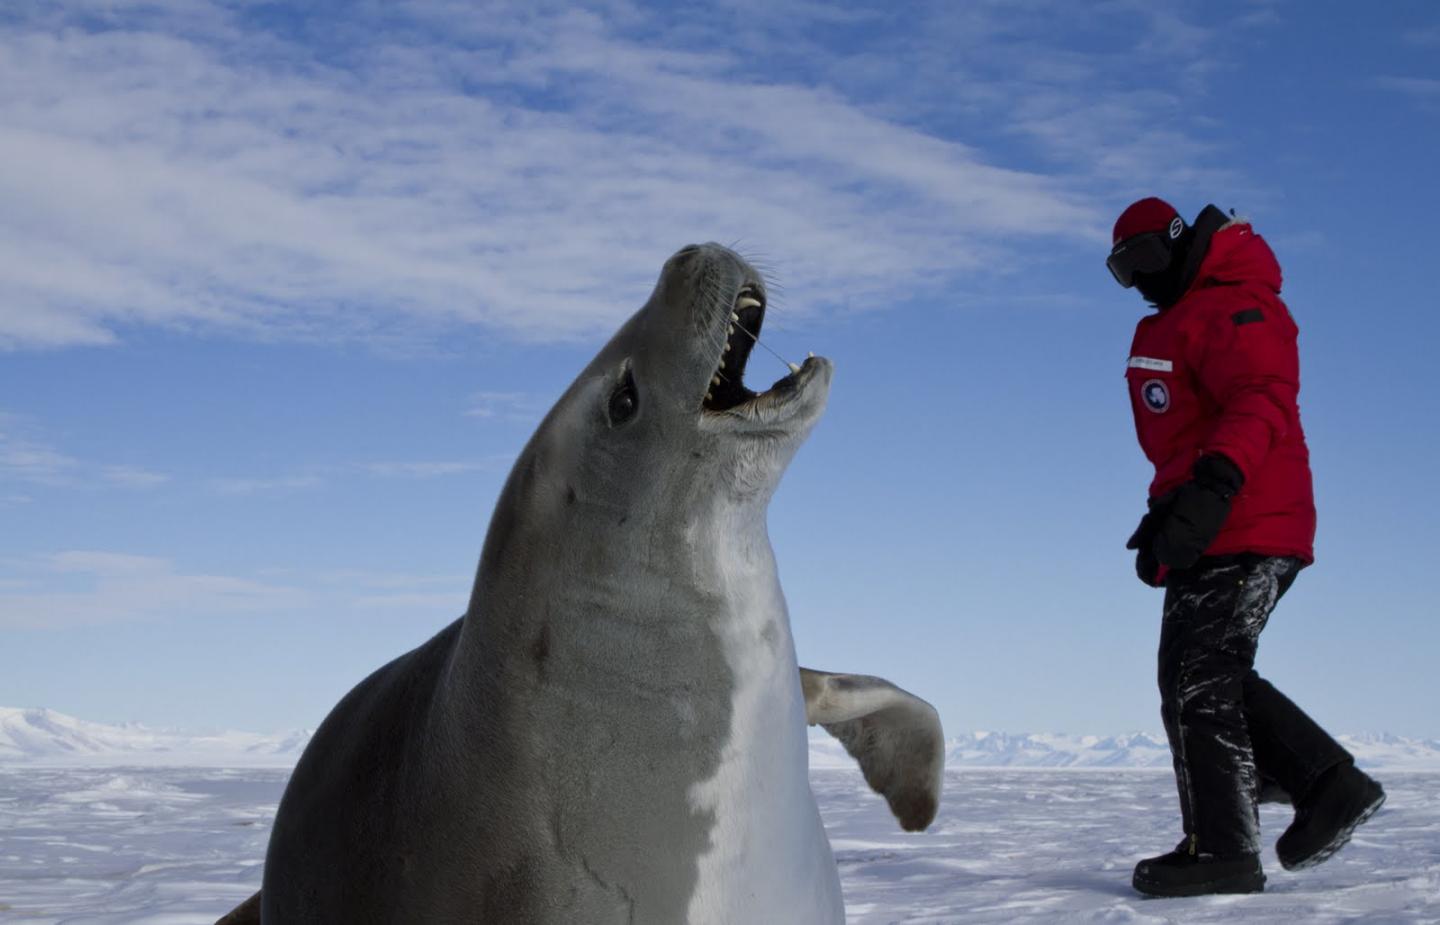 A Researcher near a Crabeater Seal in Antarctica